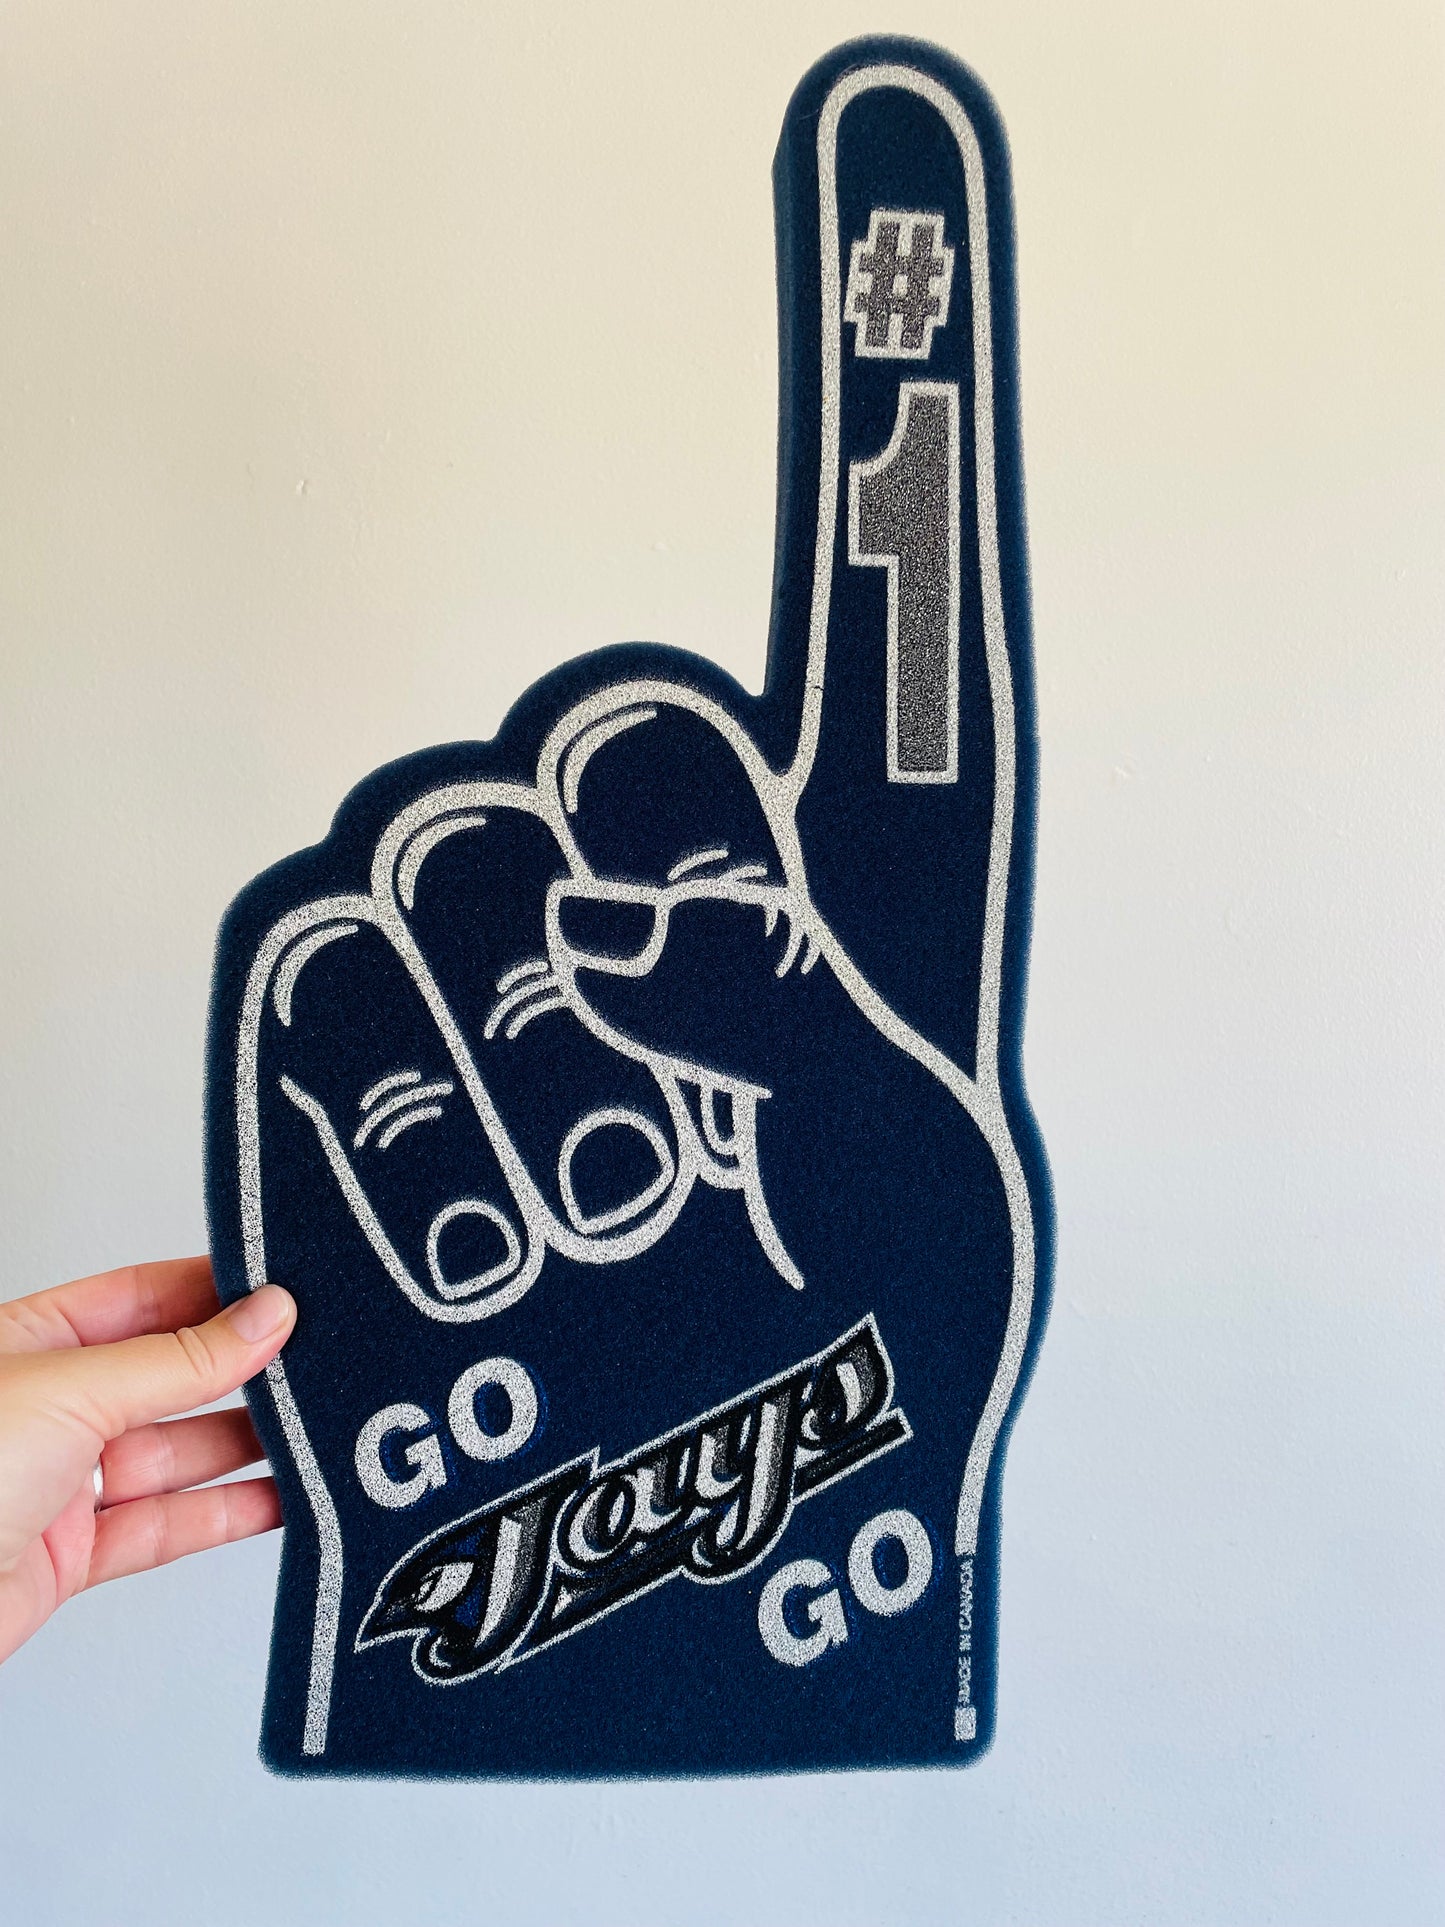 Go Jays Go # 1 - Toronto Blue Jays Giant Foam Finger Hand